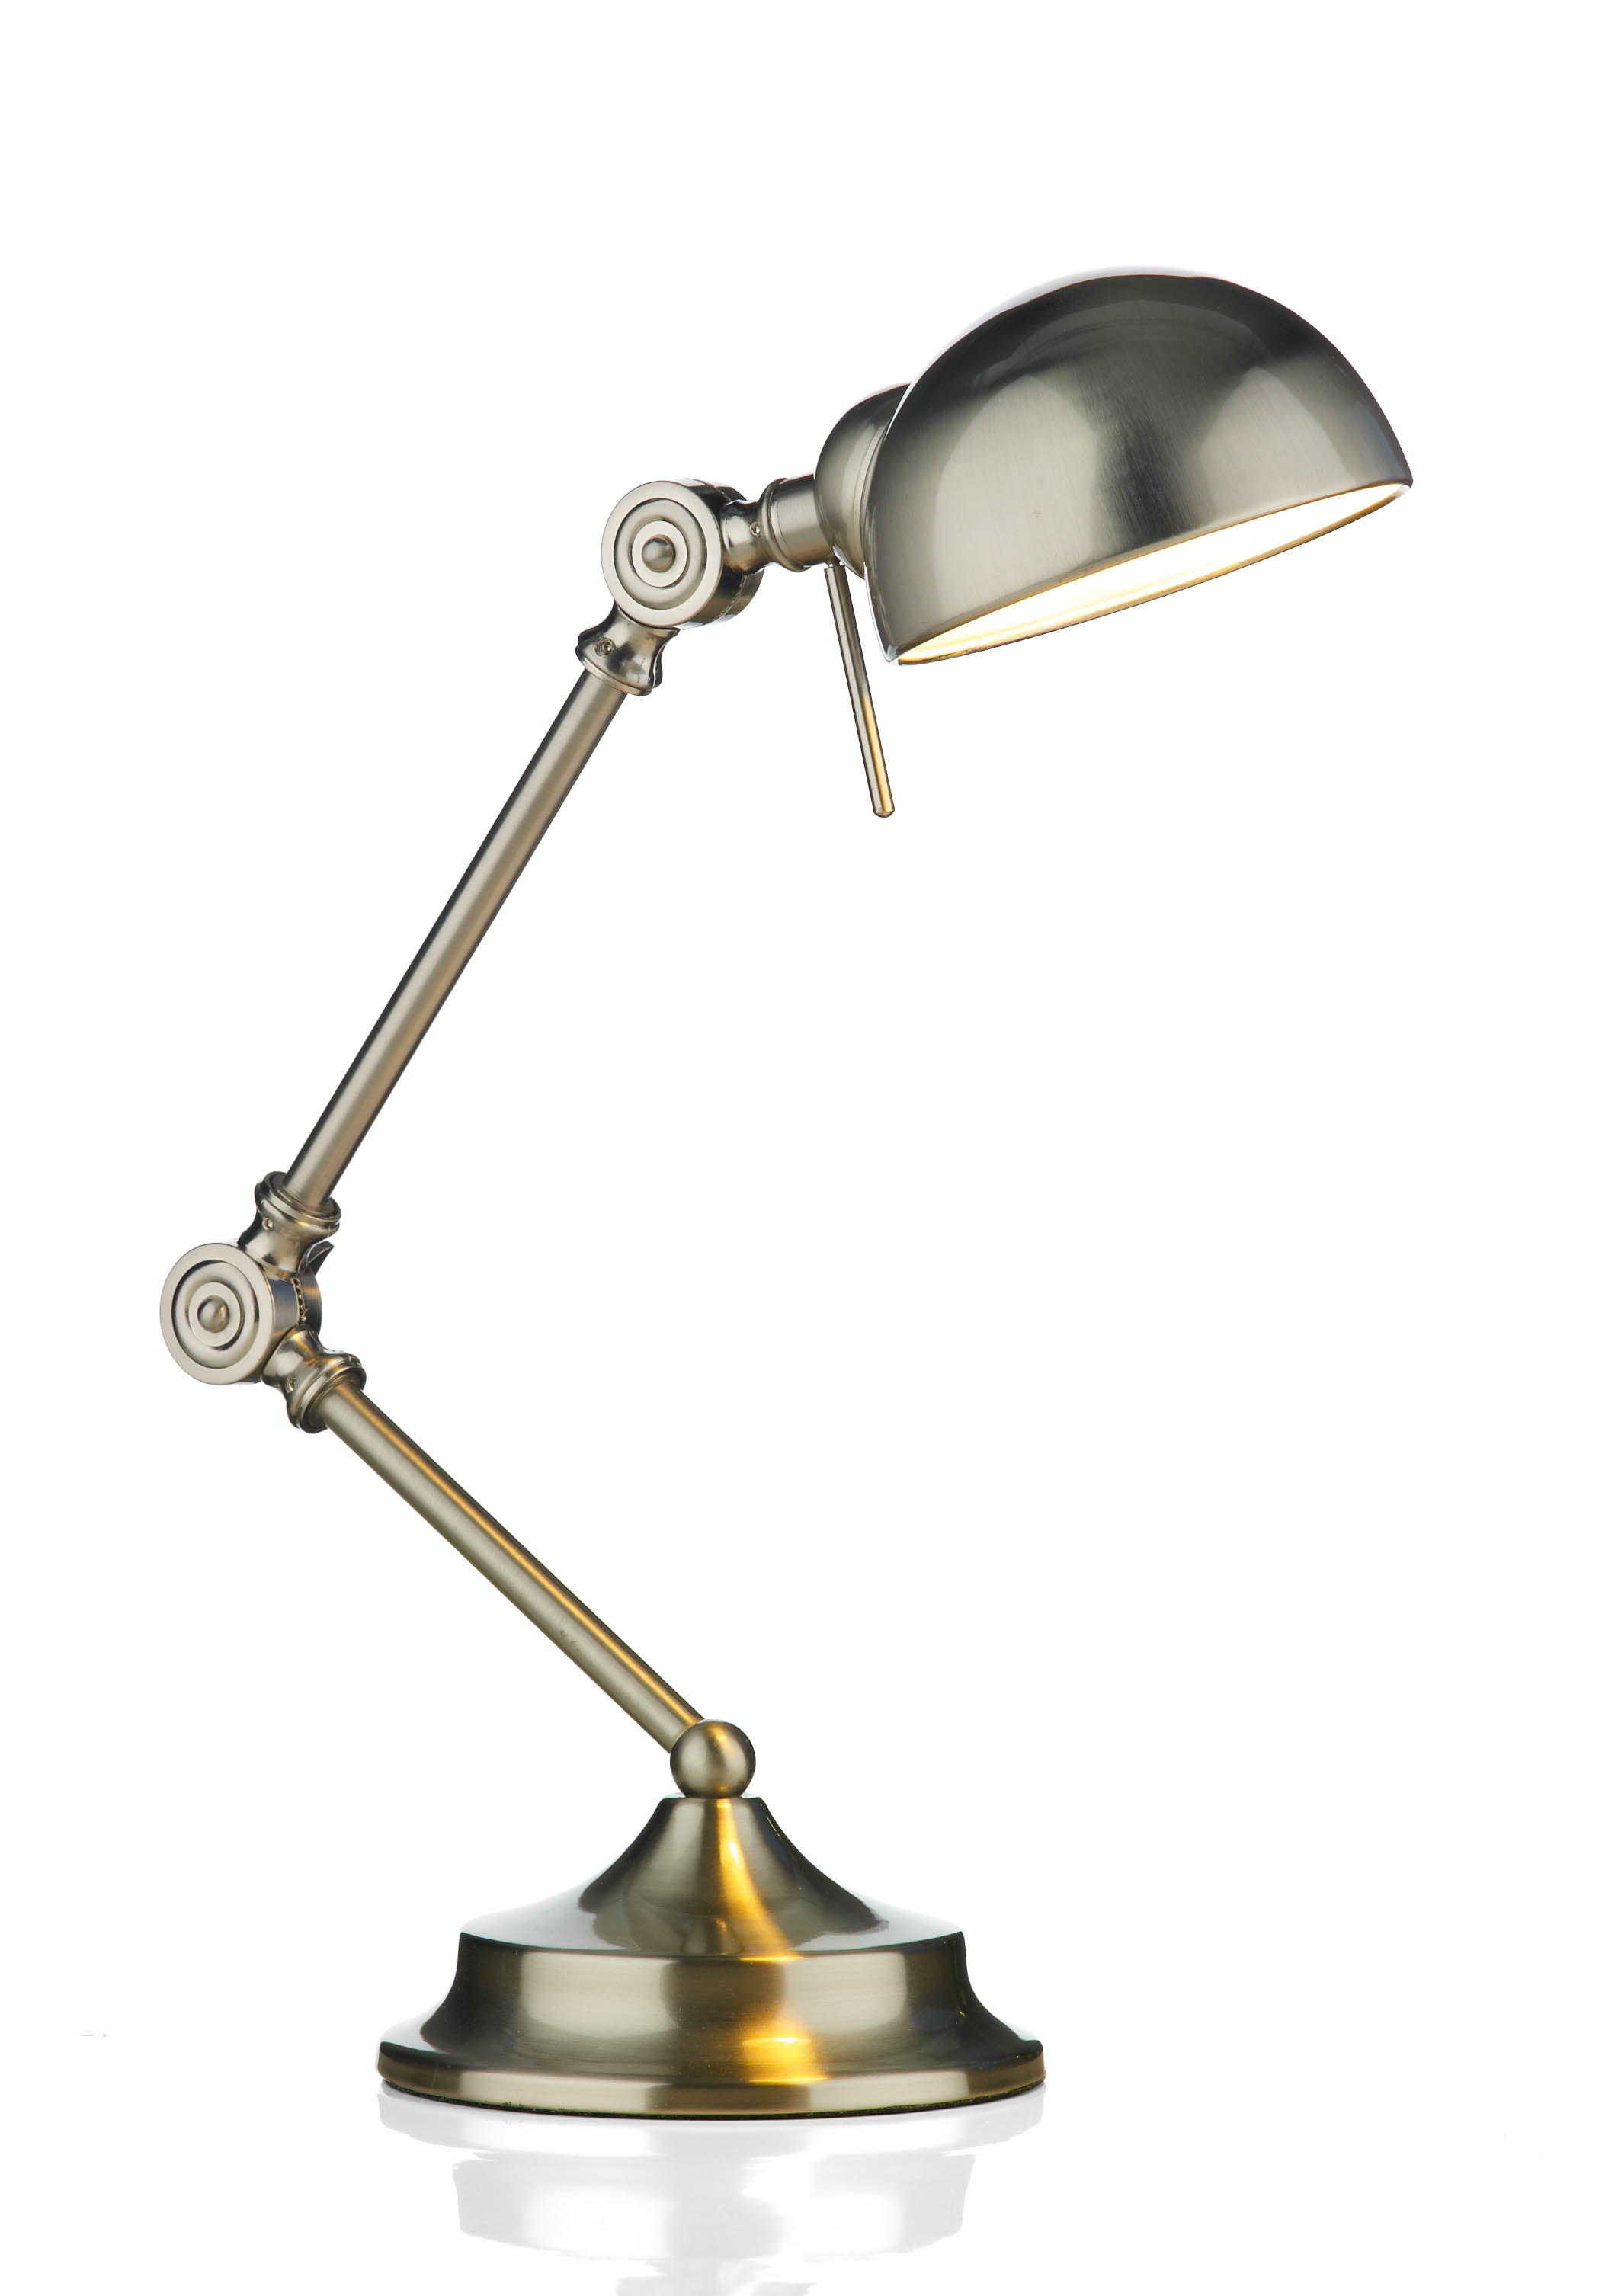 Ranger 1 light modern desk lamp satin chrome finish